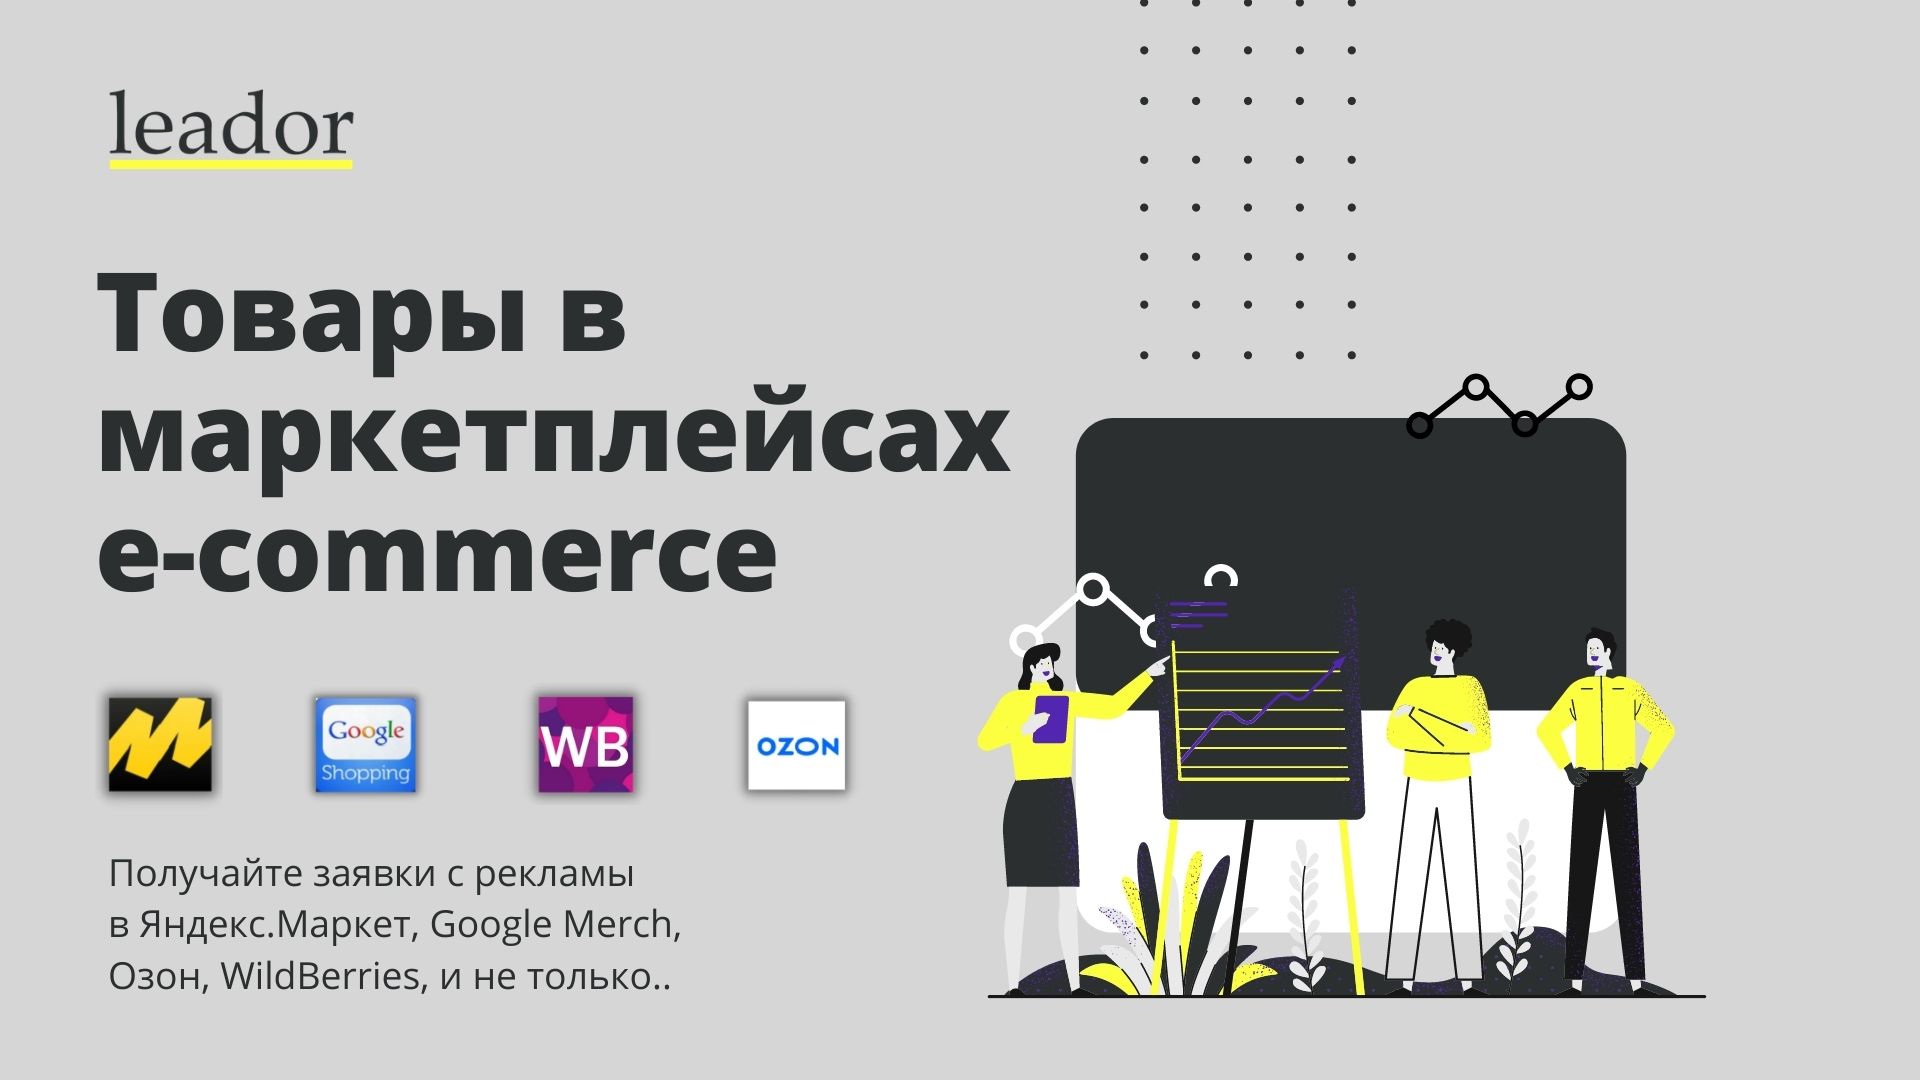 Запуск рекламы в маркетплейсах Яндекс.Маркет и не только